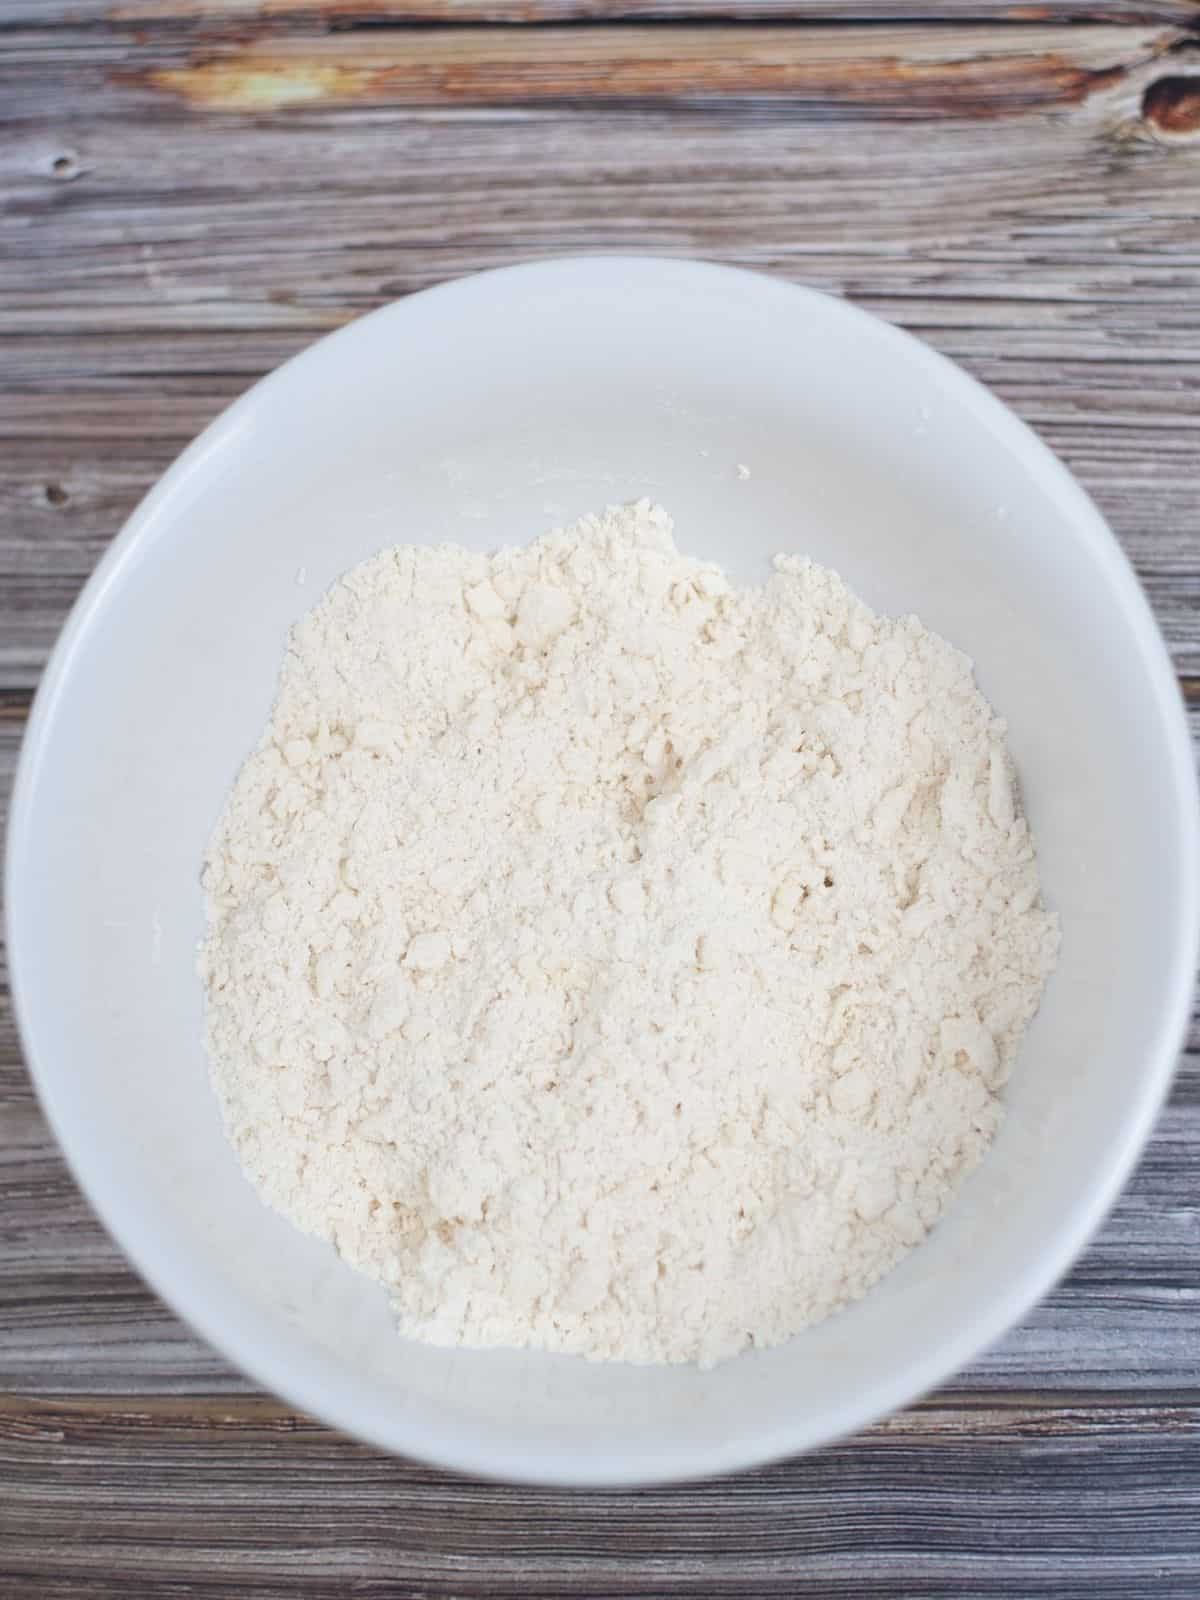 flour in white mixing bowl.